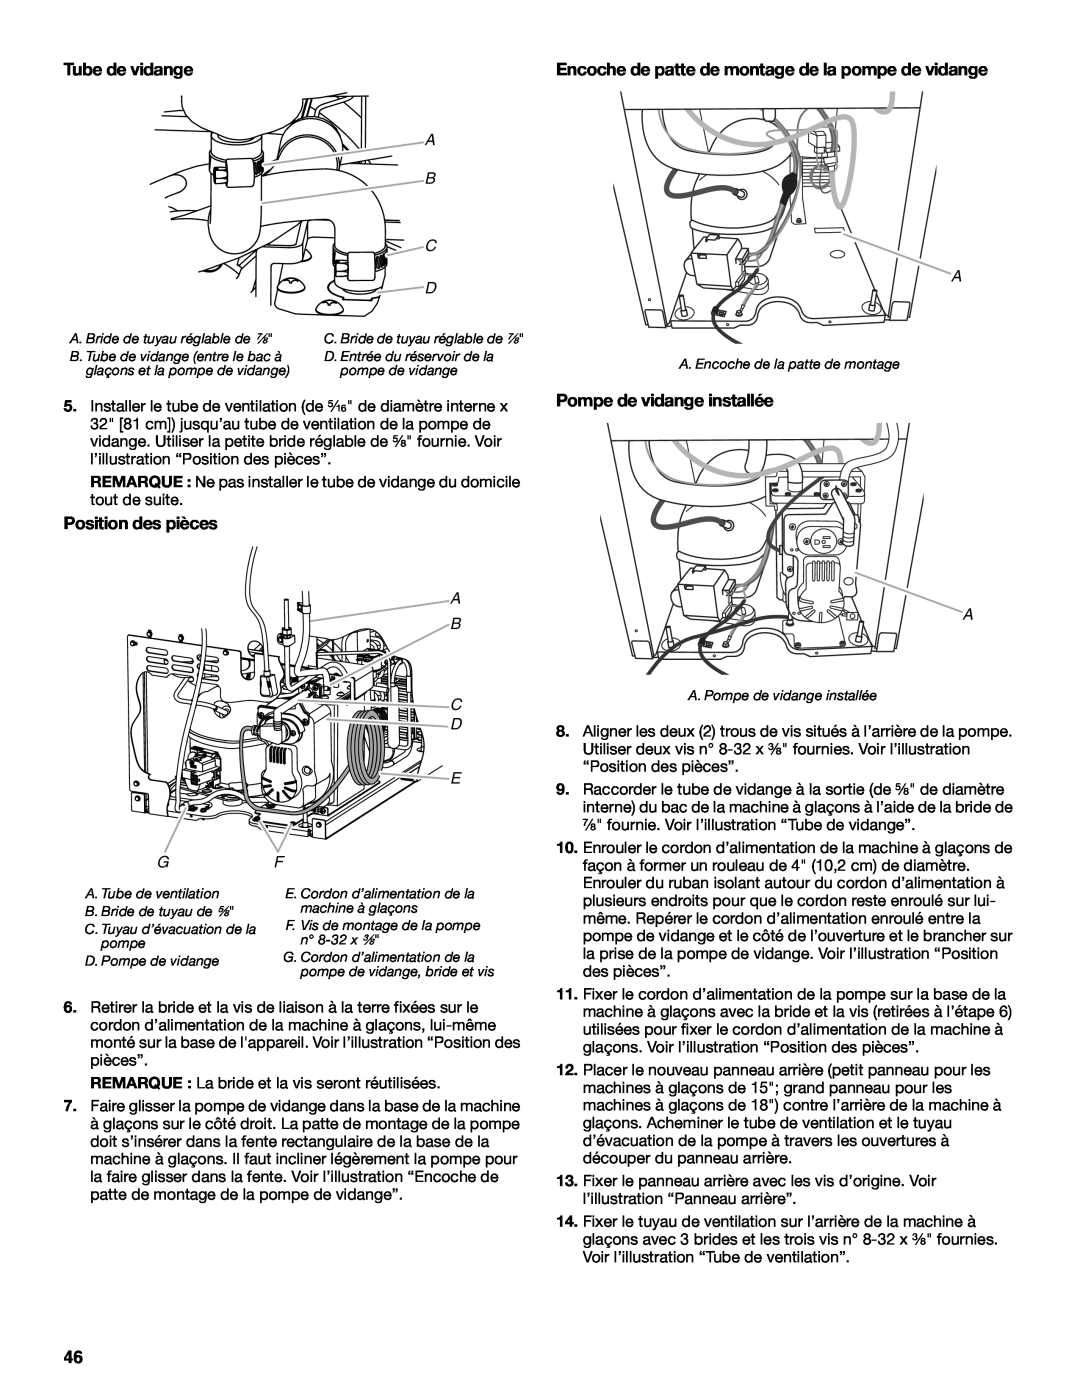 KitchenAid W10515677C manual Tube de vidange, Position des pièces, Encoche de patte de montage de la pompe de vidange 